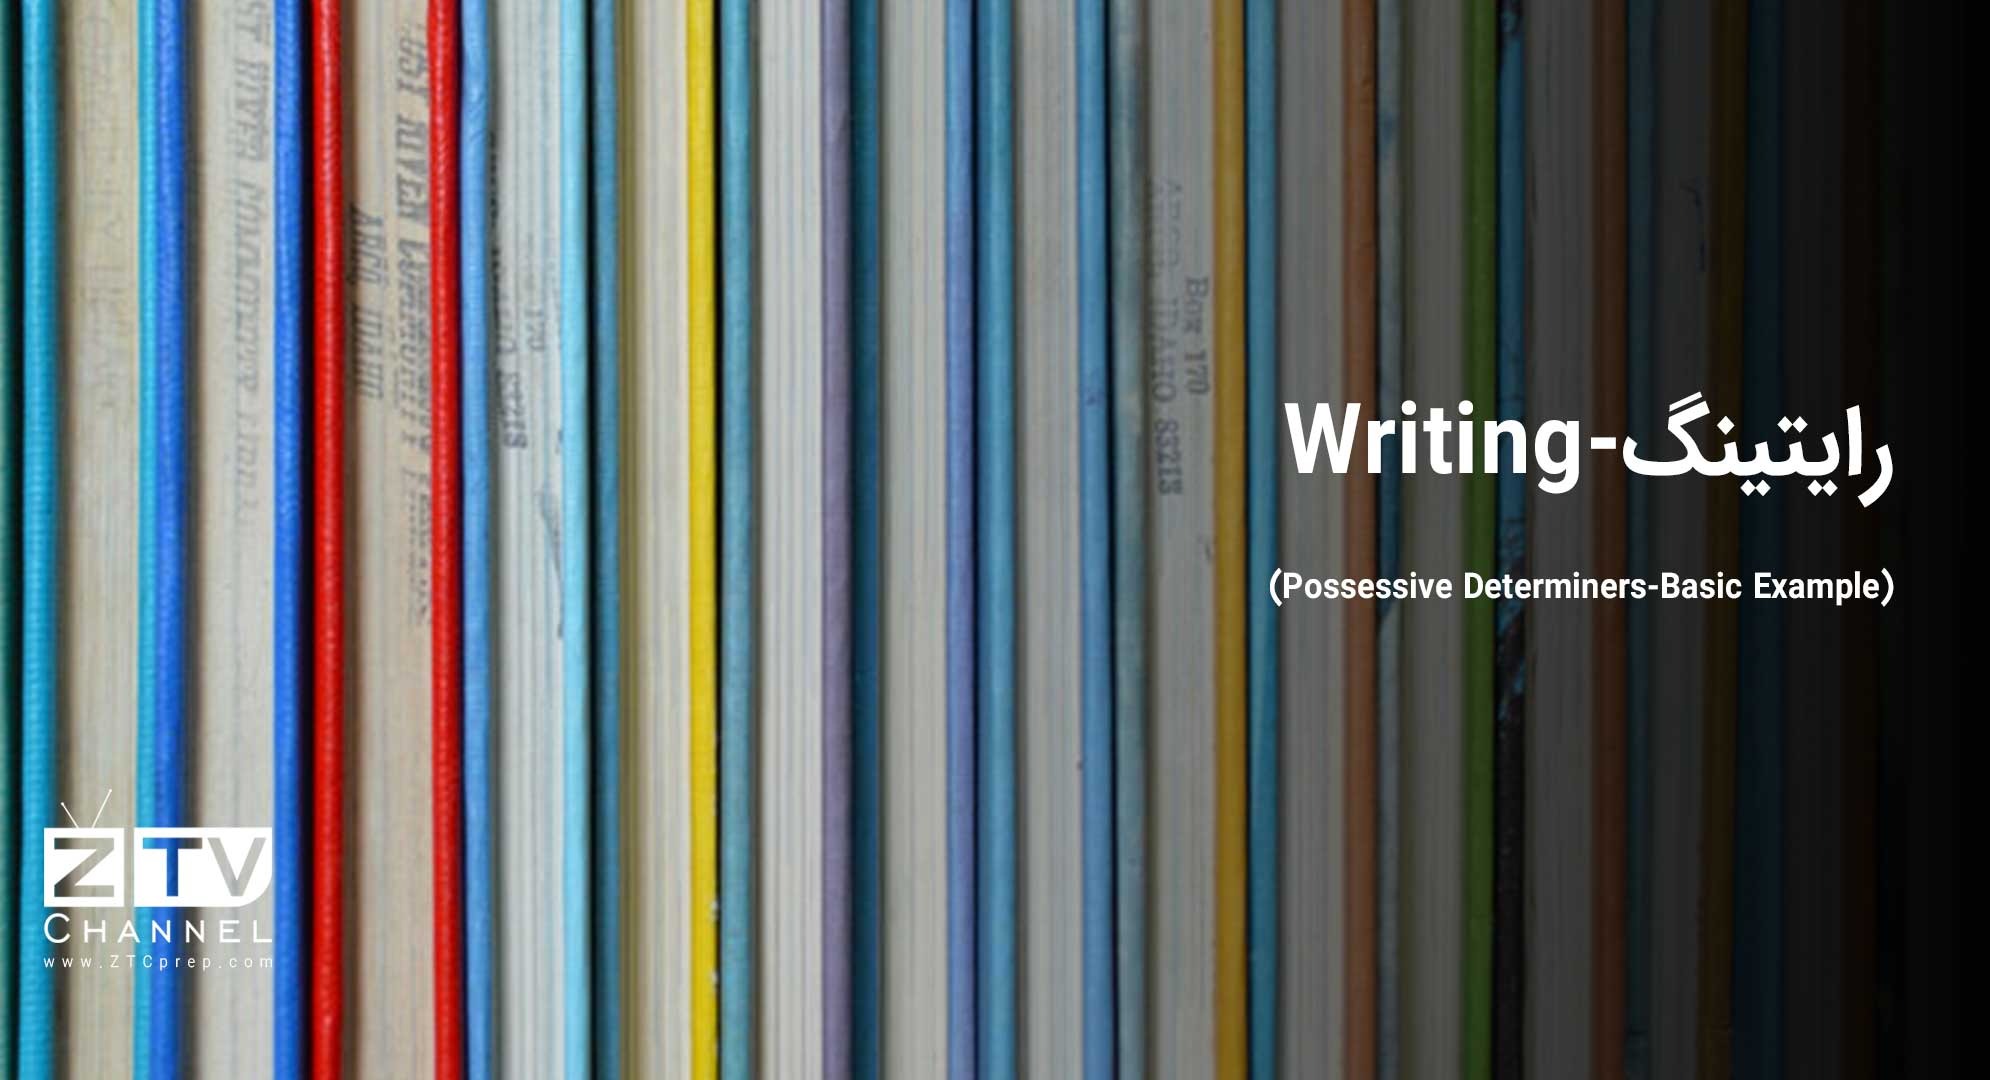 رایتینگ - (Writing (Possessive Determiners-Basic Example